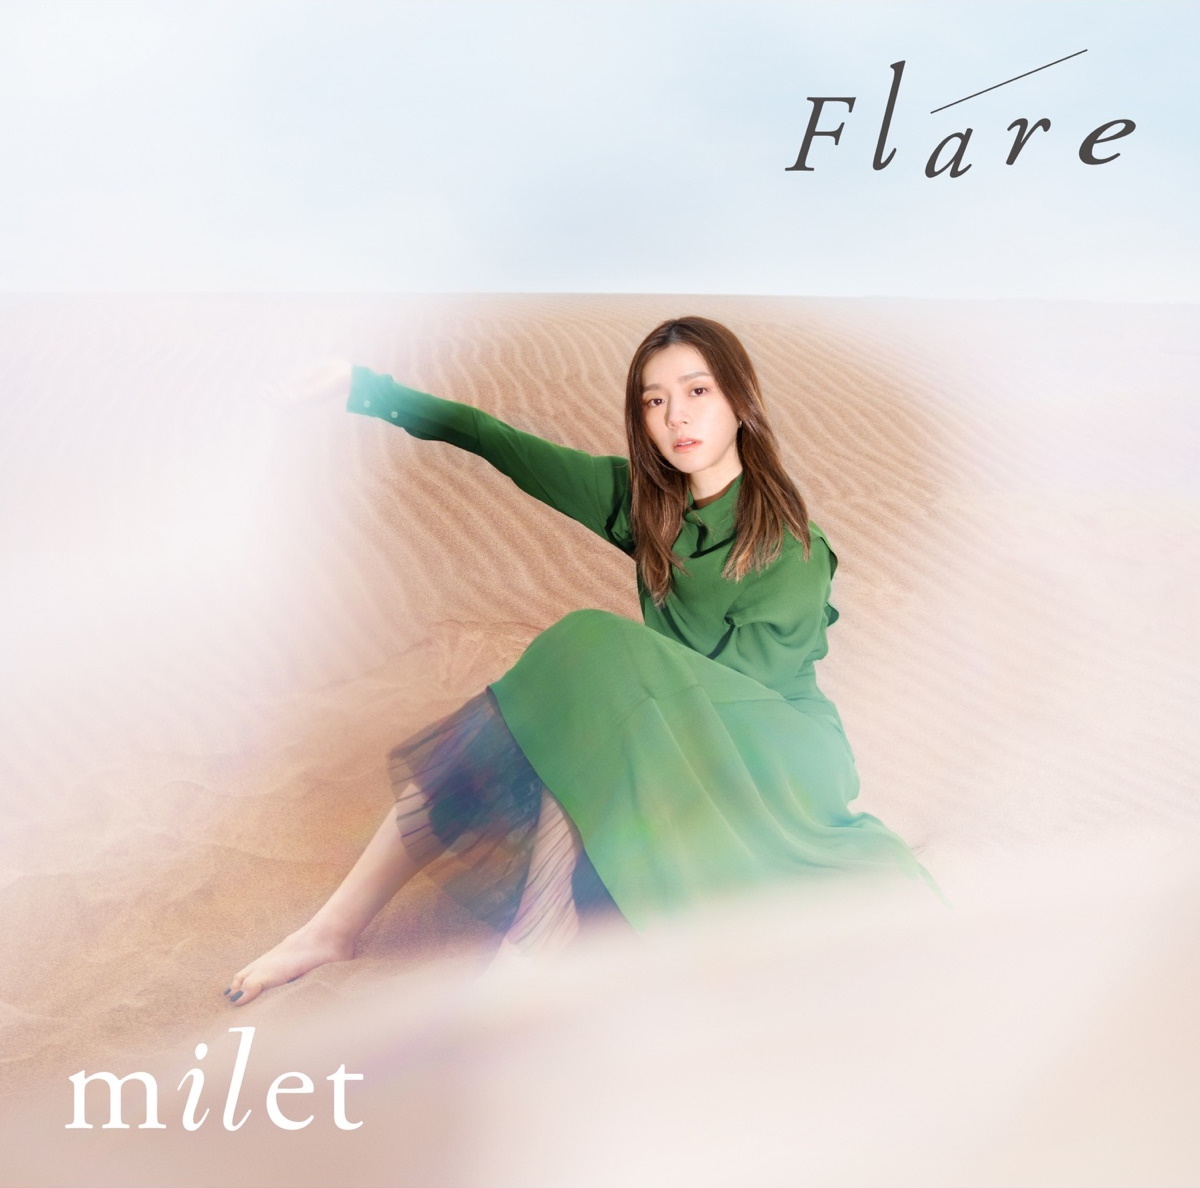 『milet - Flare』収録の『Flare』ジャケット